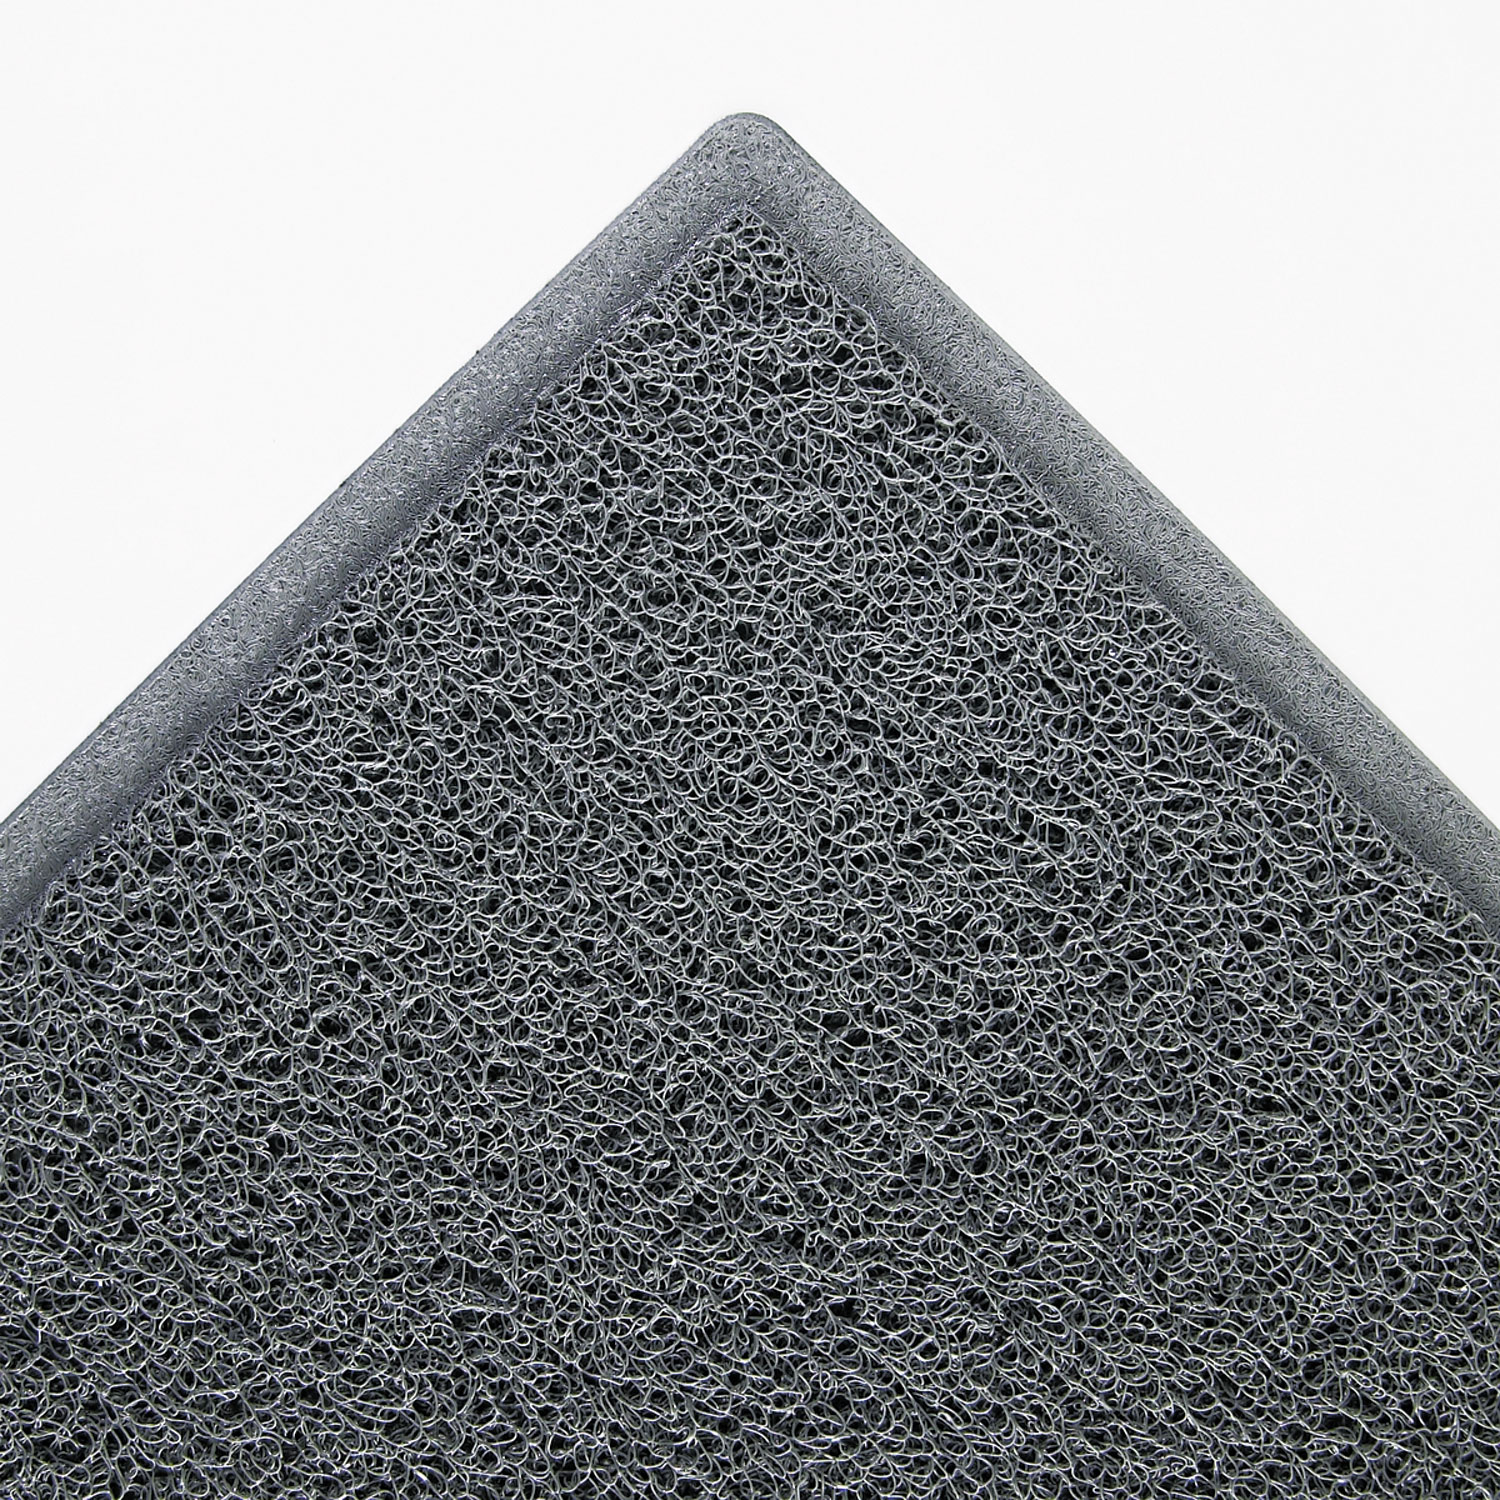  3M 6050 Dirt Stop Scraper Mat, Polypropylene, 36 x 60, Slate Gray (MMM34838) 